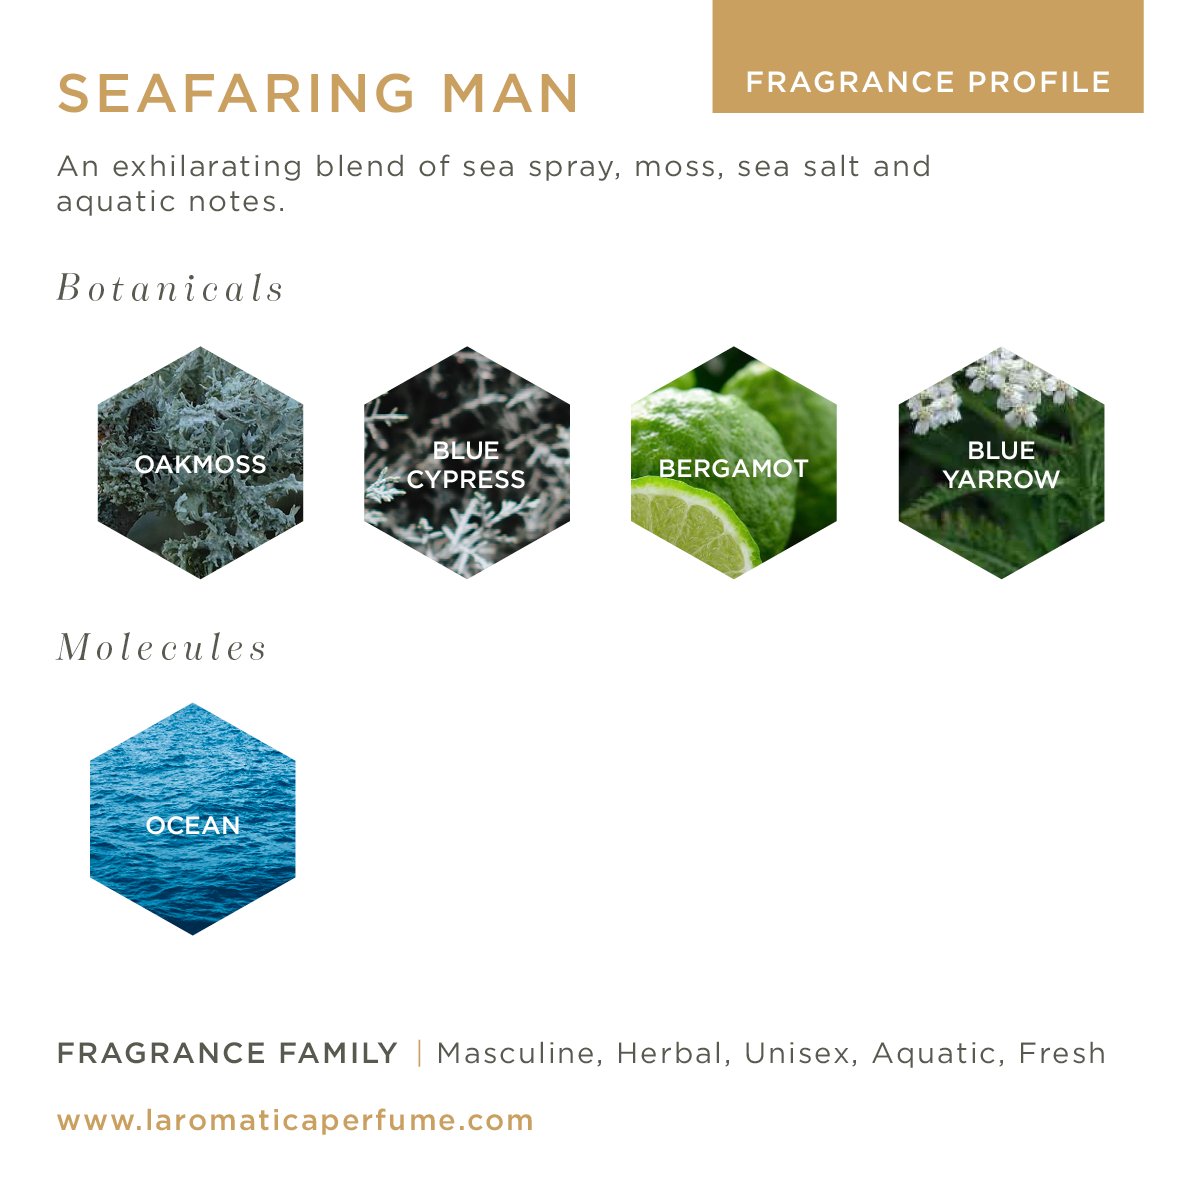 Image of Seafaring Man 